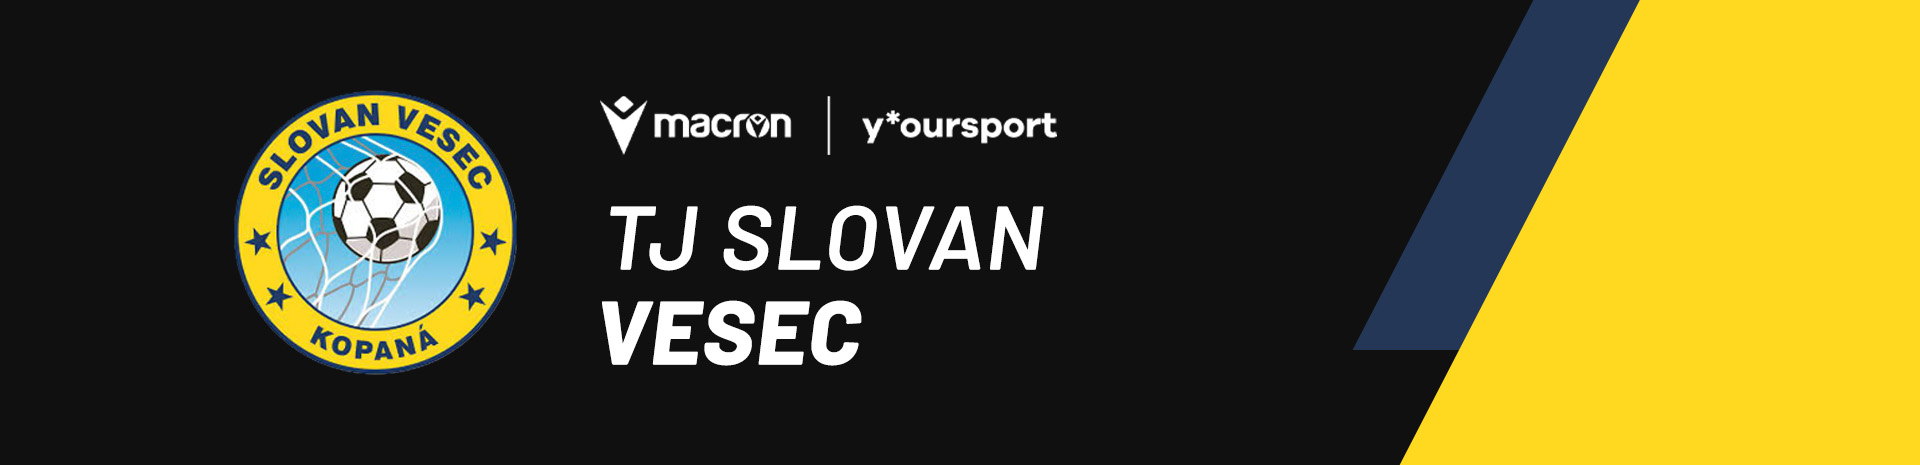 TJ Slovan Vesec desktop